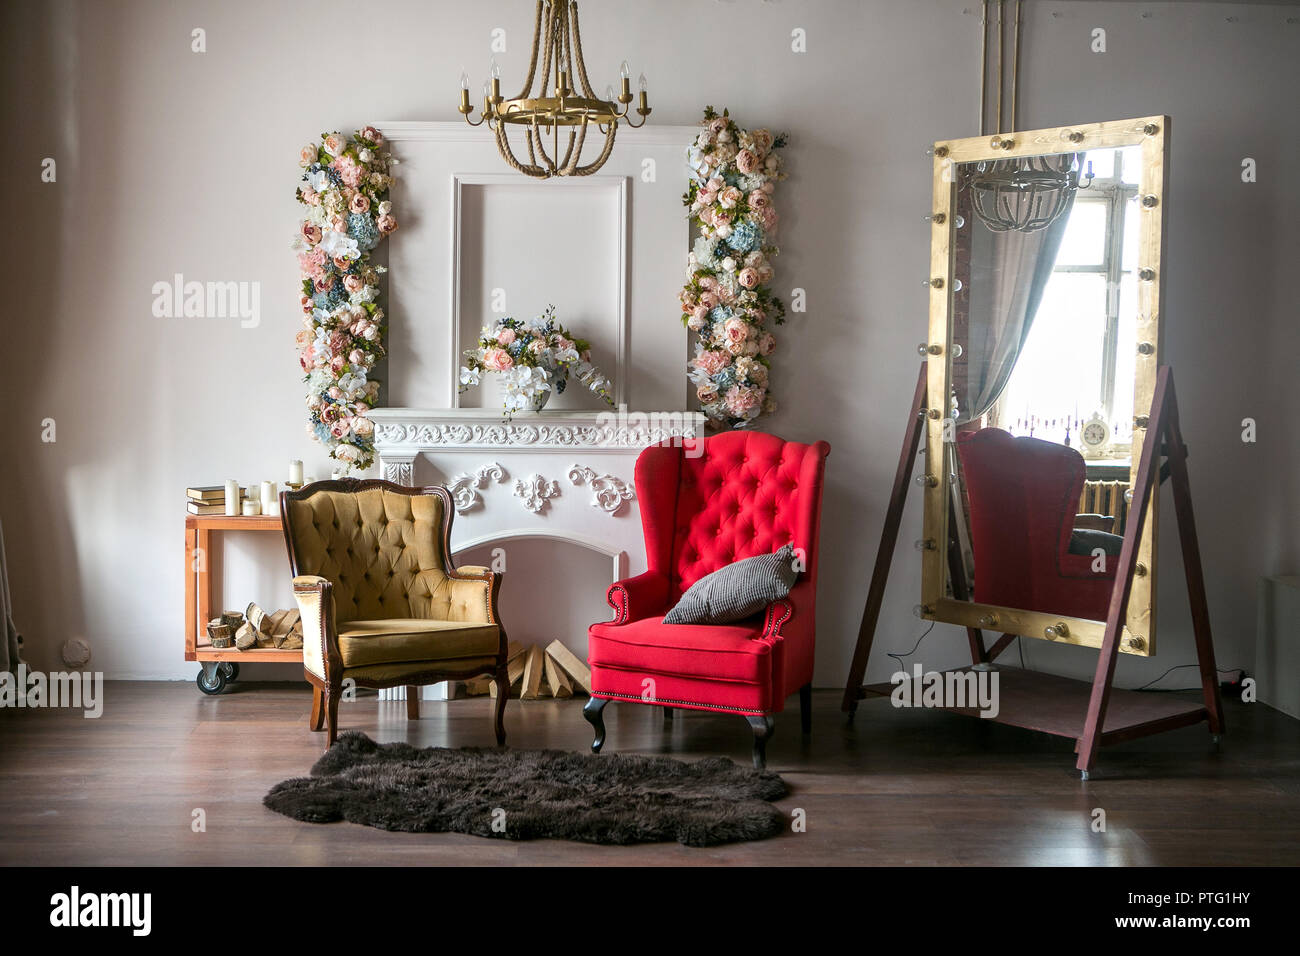 Helle Loft Zimmer mit einem roten Sessel, einen braunen Sessel, ein weißer Kamin mit Blumen, einem großen Spiegel mit Lampen und einem Kronleuchter Stockfoto